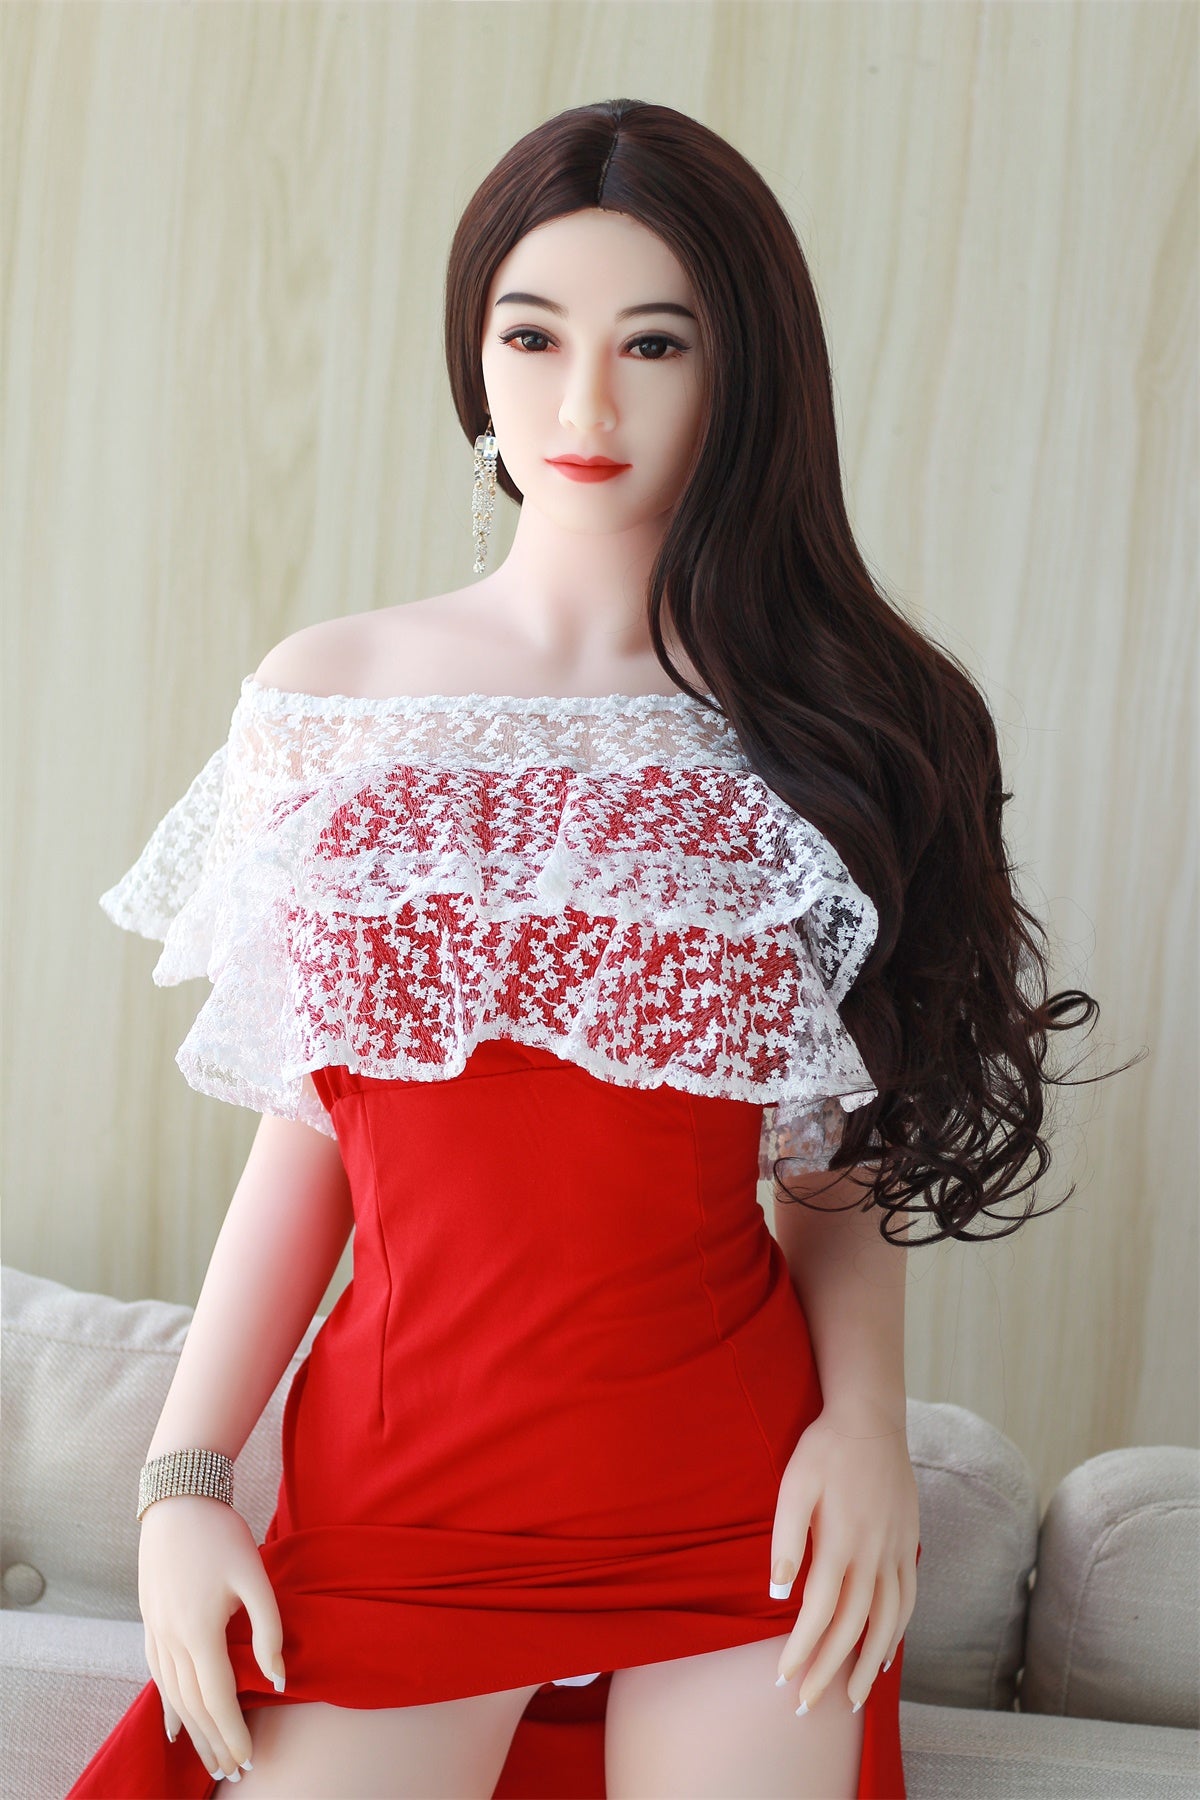 158 49 Medium Breast Asian Girl Sex Doll 158cm Standing Feet Moan Soun Jd Lover Sex Doll 1032